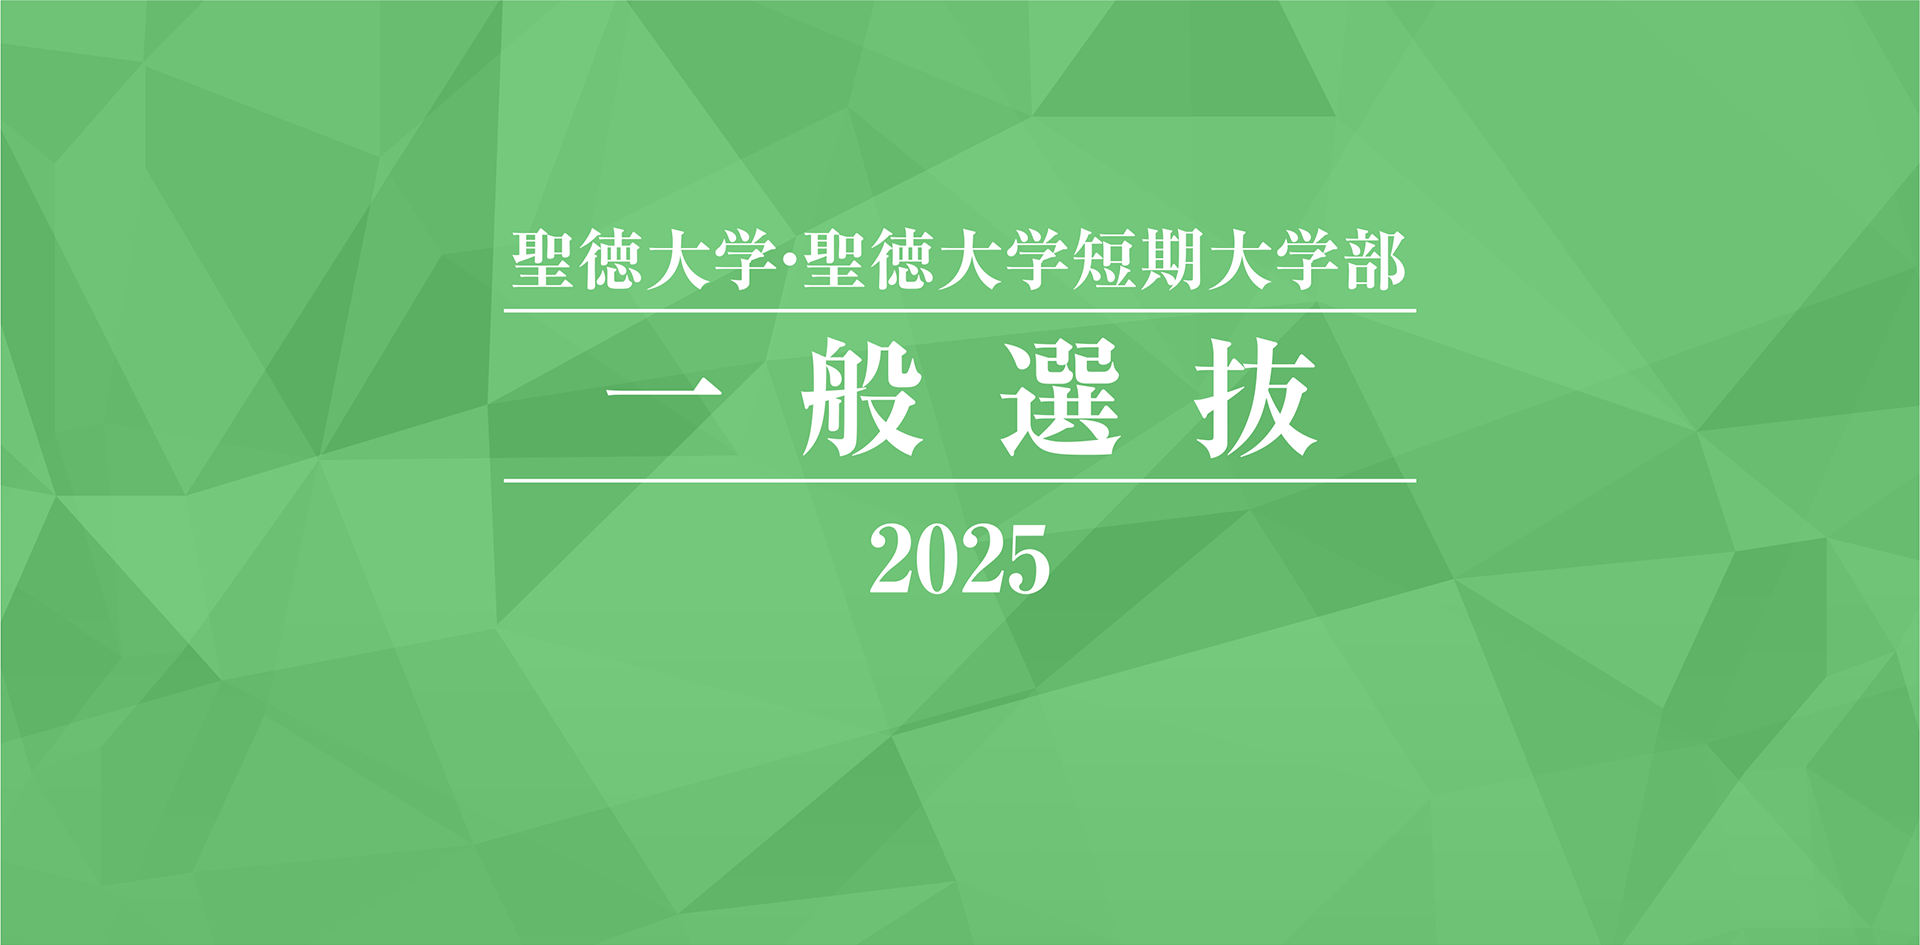 聖徳大学・聖徳大学短期大学部 一般選抜 2025